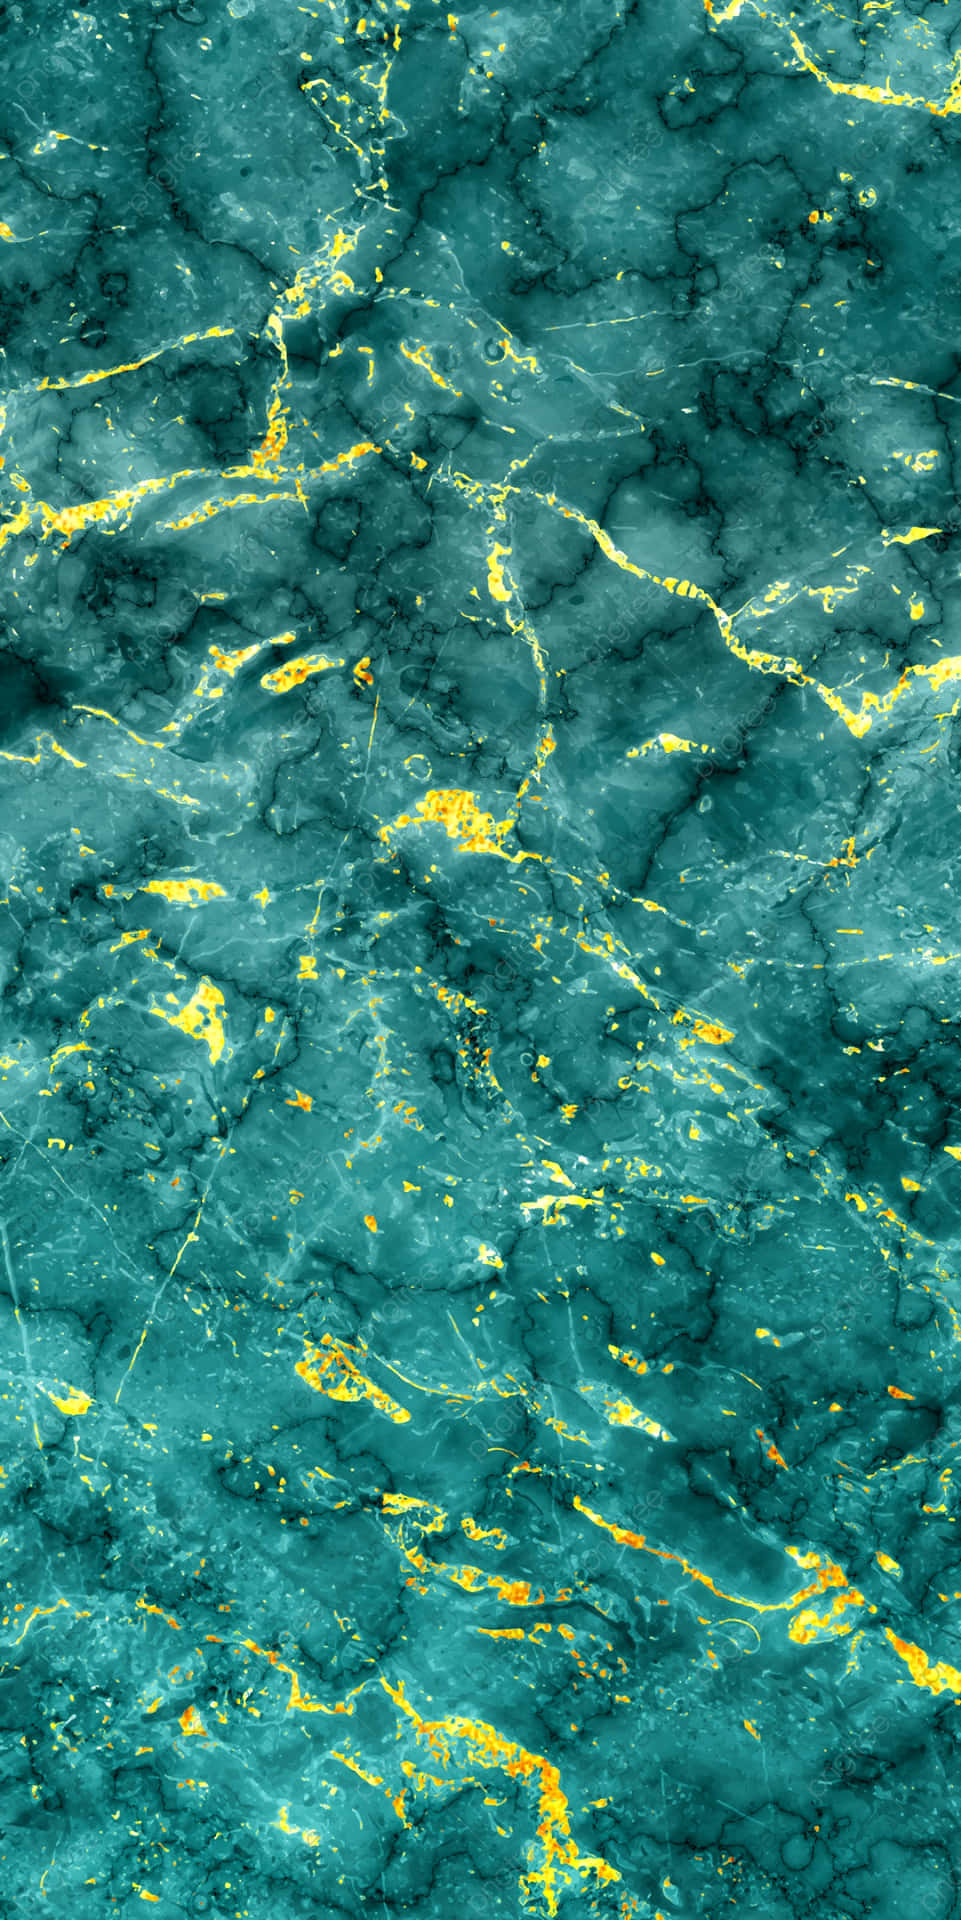 Eineatemberaubende Marmorierte Oberfläche In Türkis Schafft Ein Faszinierendes Visuelles Erlebnis. Wallpaper